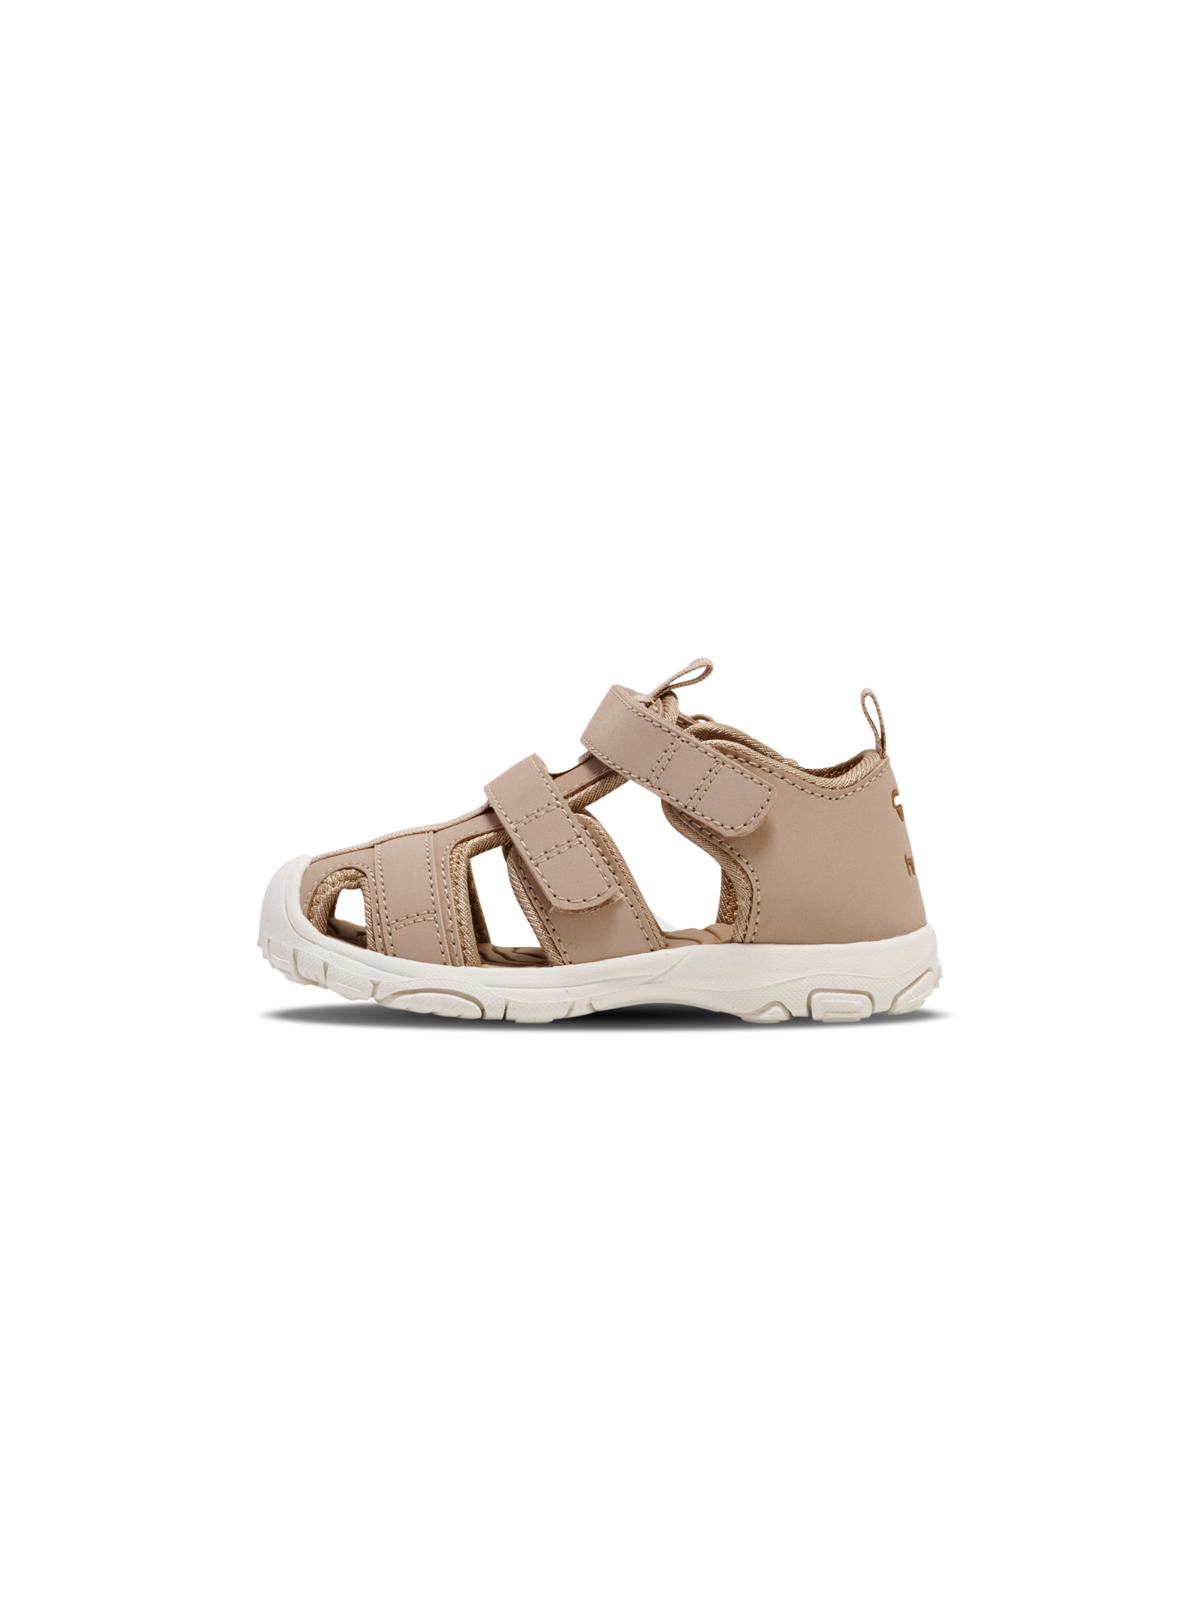 Hummel Kids’ Sandal Velcro Infant Warm Taupe